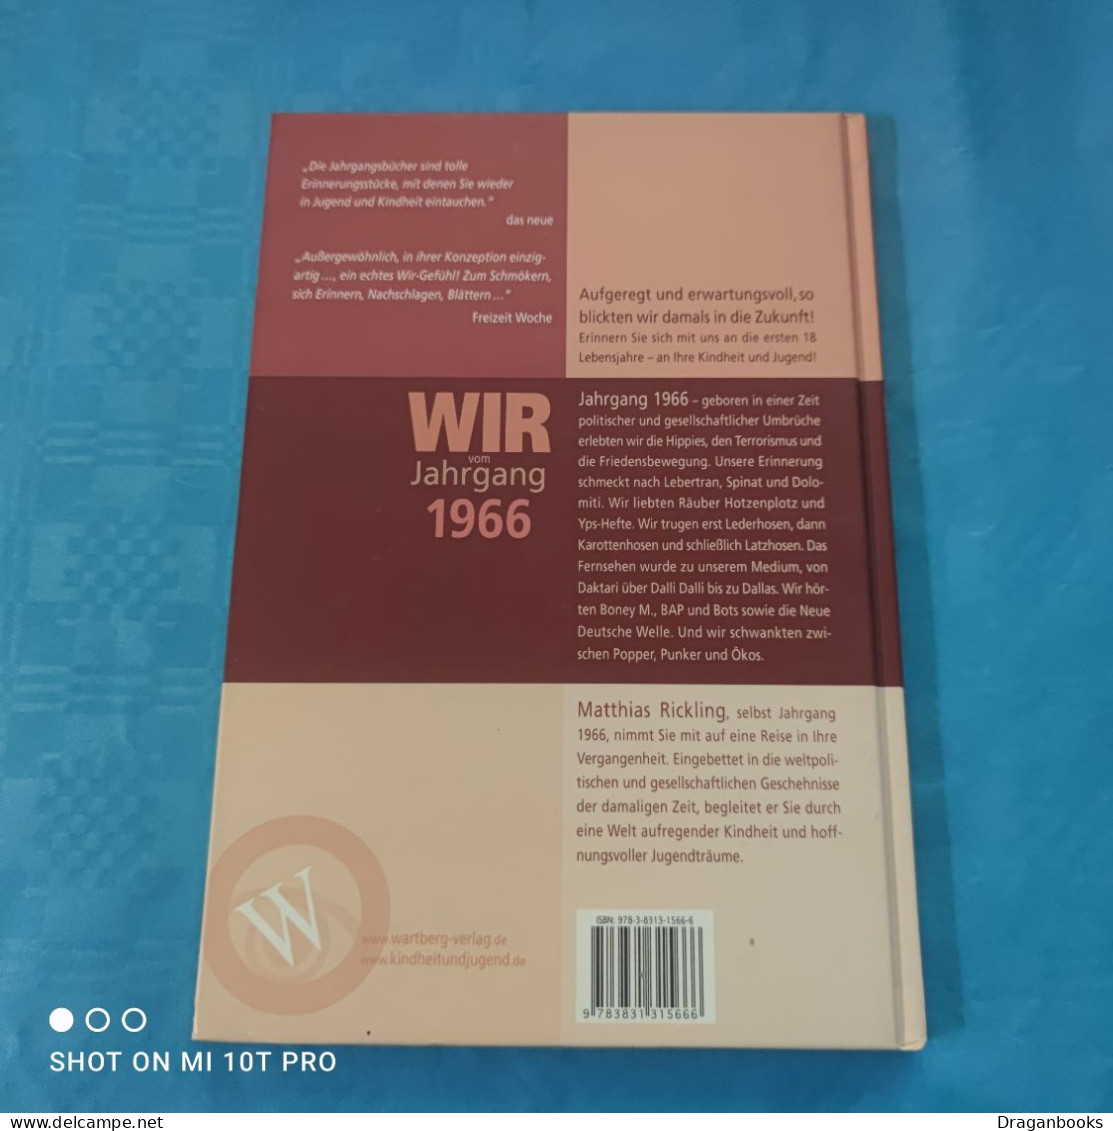 Matthias Rickling - Wir Vom Jahrgang 1966 - Chroniken & Jahrbücher